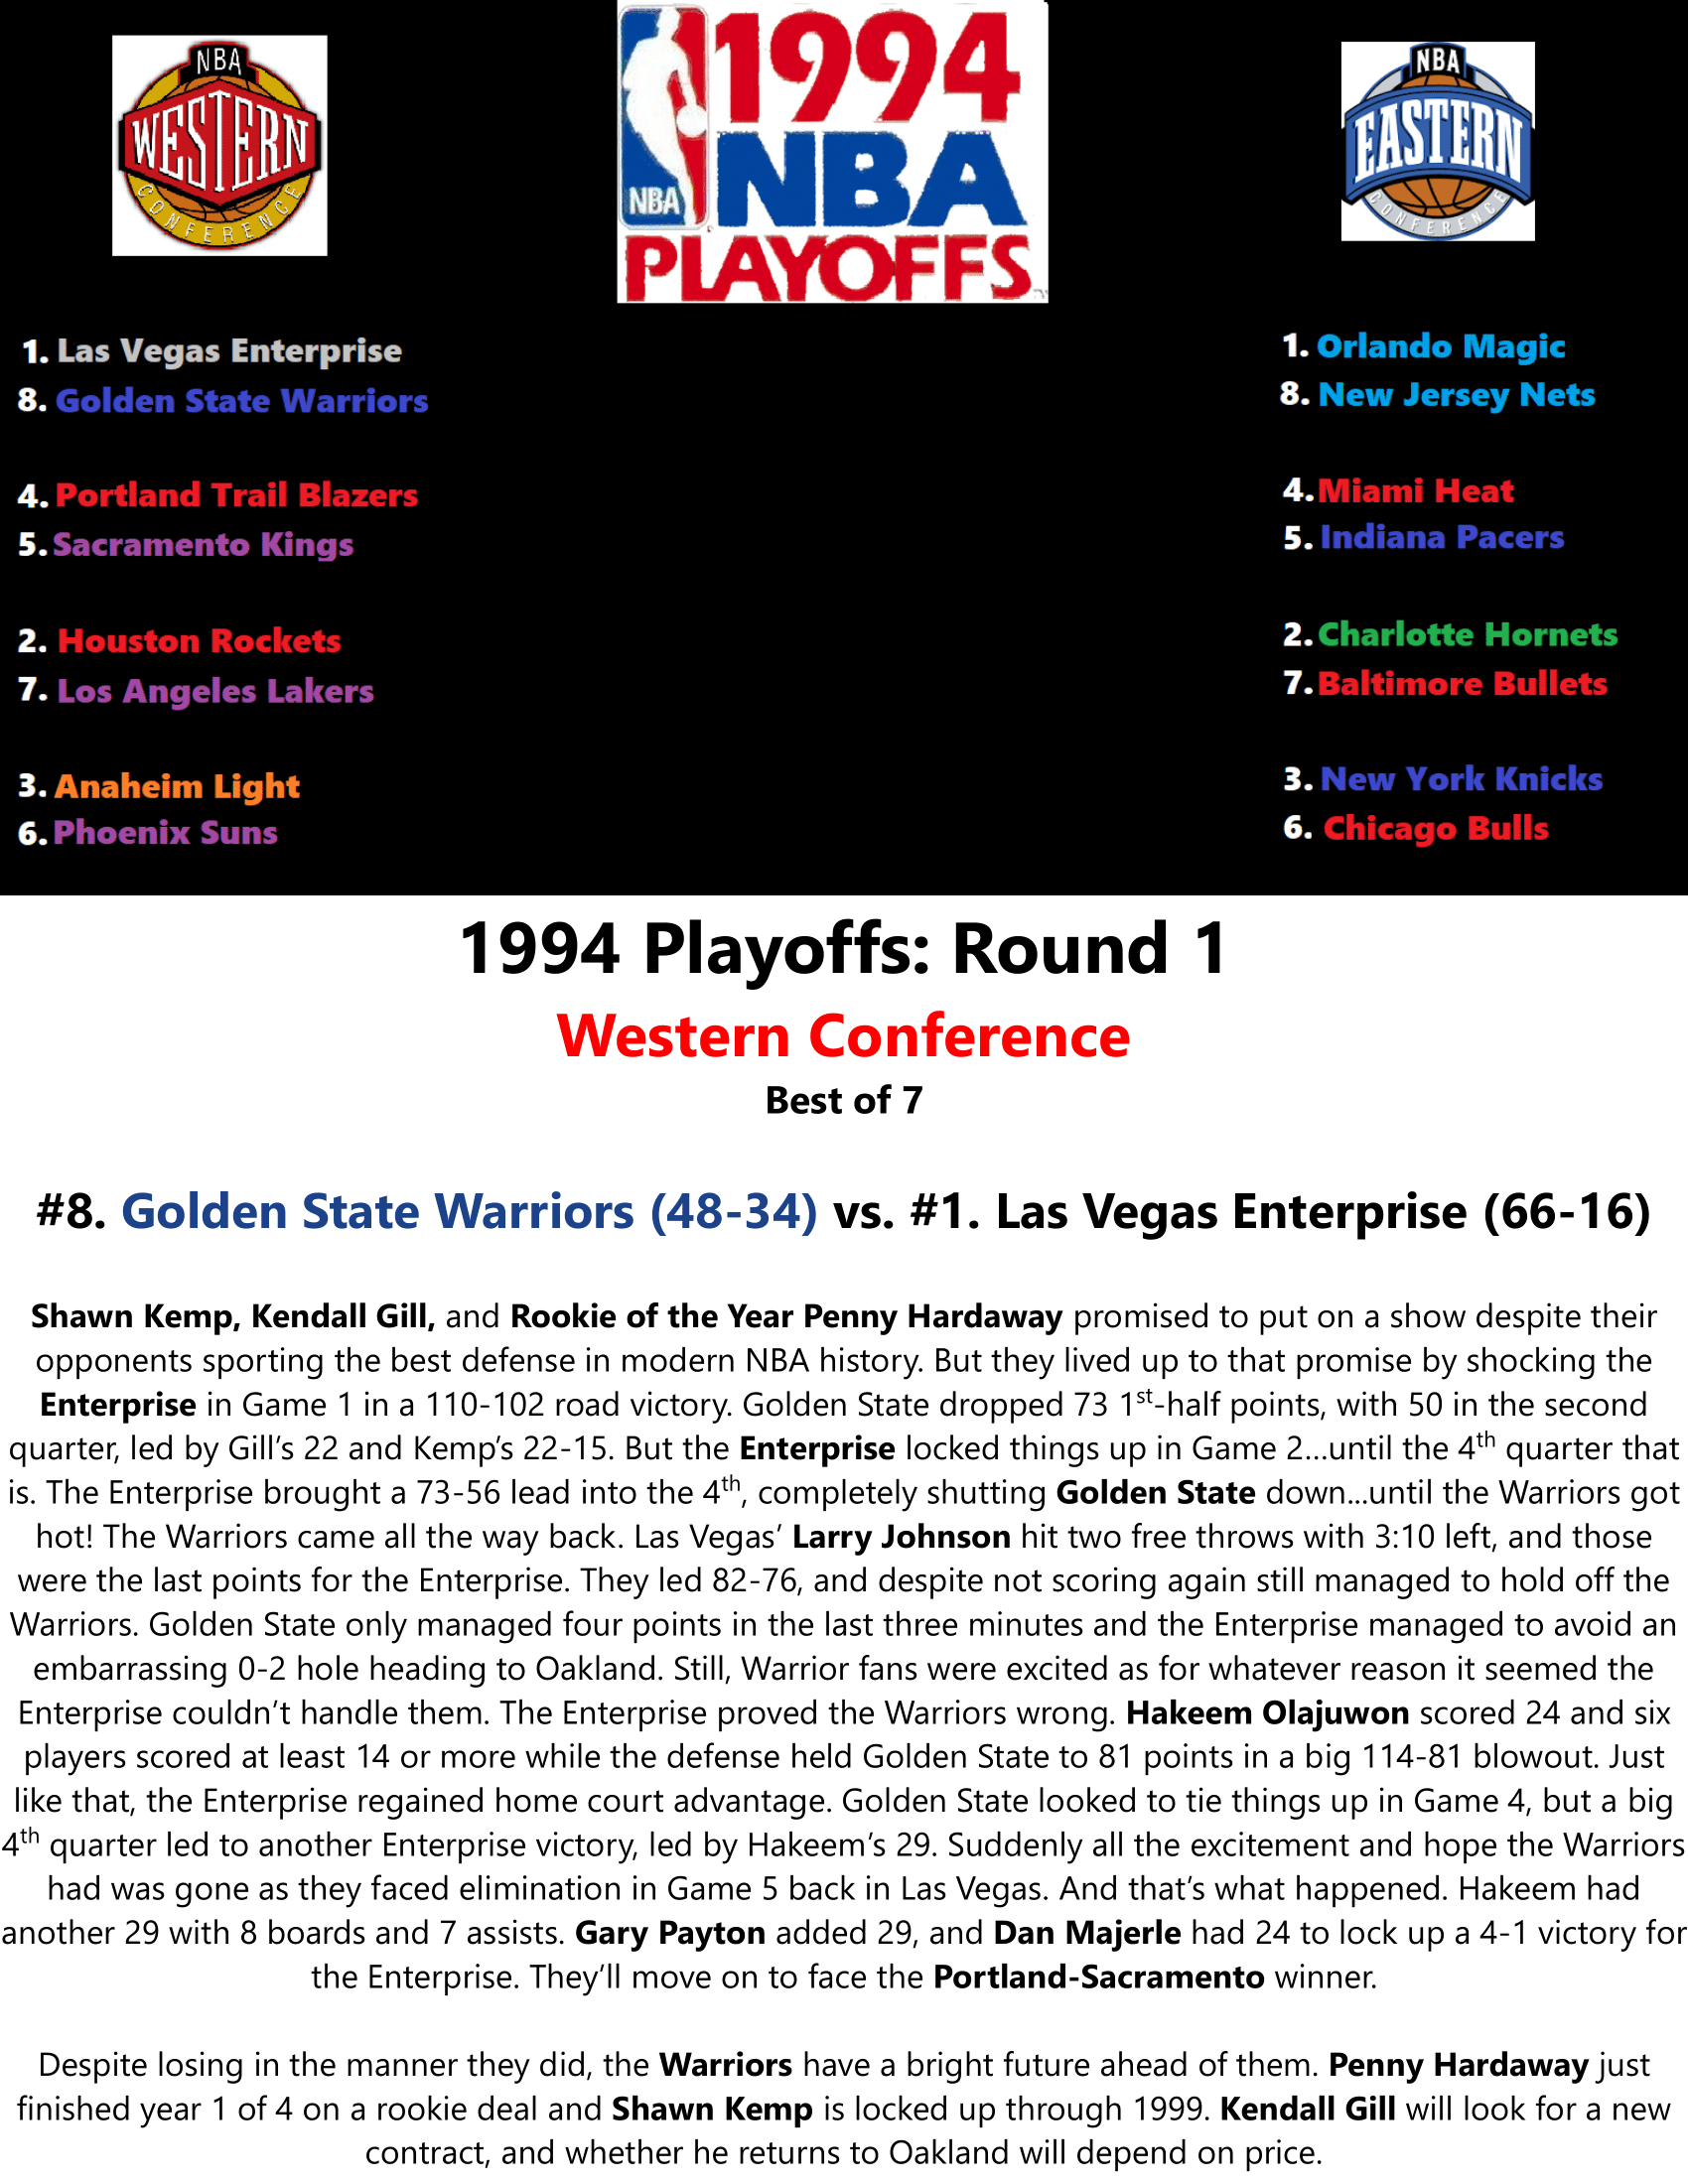 93-94-Part-5-NBA-Playoffs-01.png